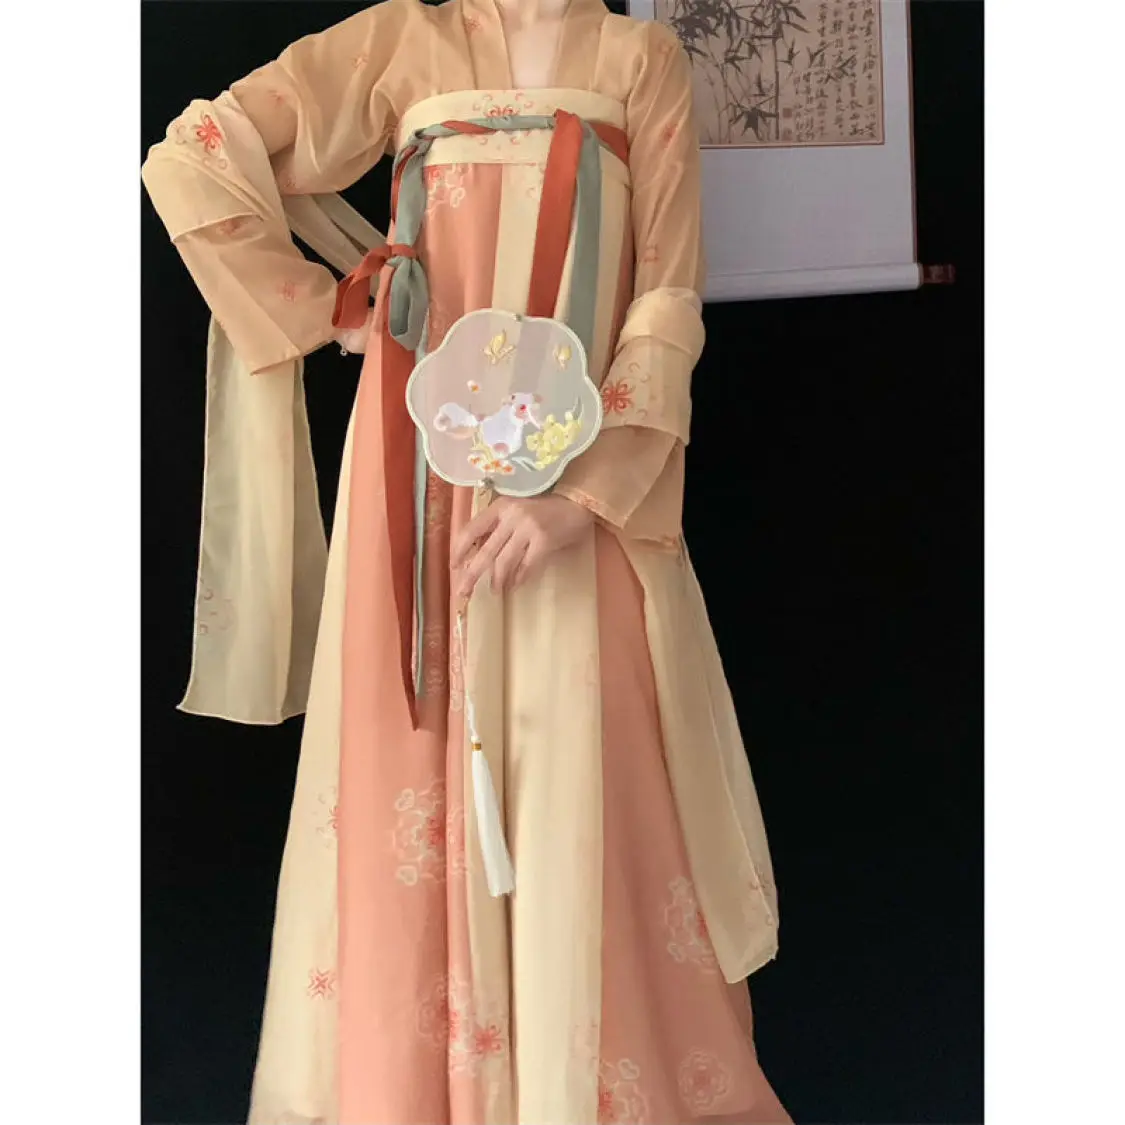 סיני Hanfu פיות להתלבש Cosplay שיפון מלא להגדיר מסורתי הפסטיבל היומן אופנה בגדים מודרניים לנשים ילדה צבע ירוק - 1